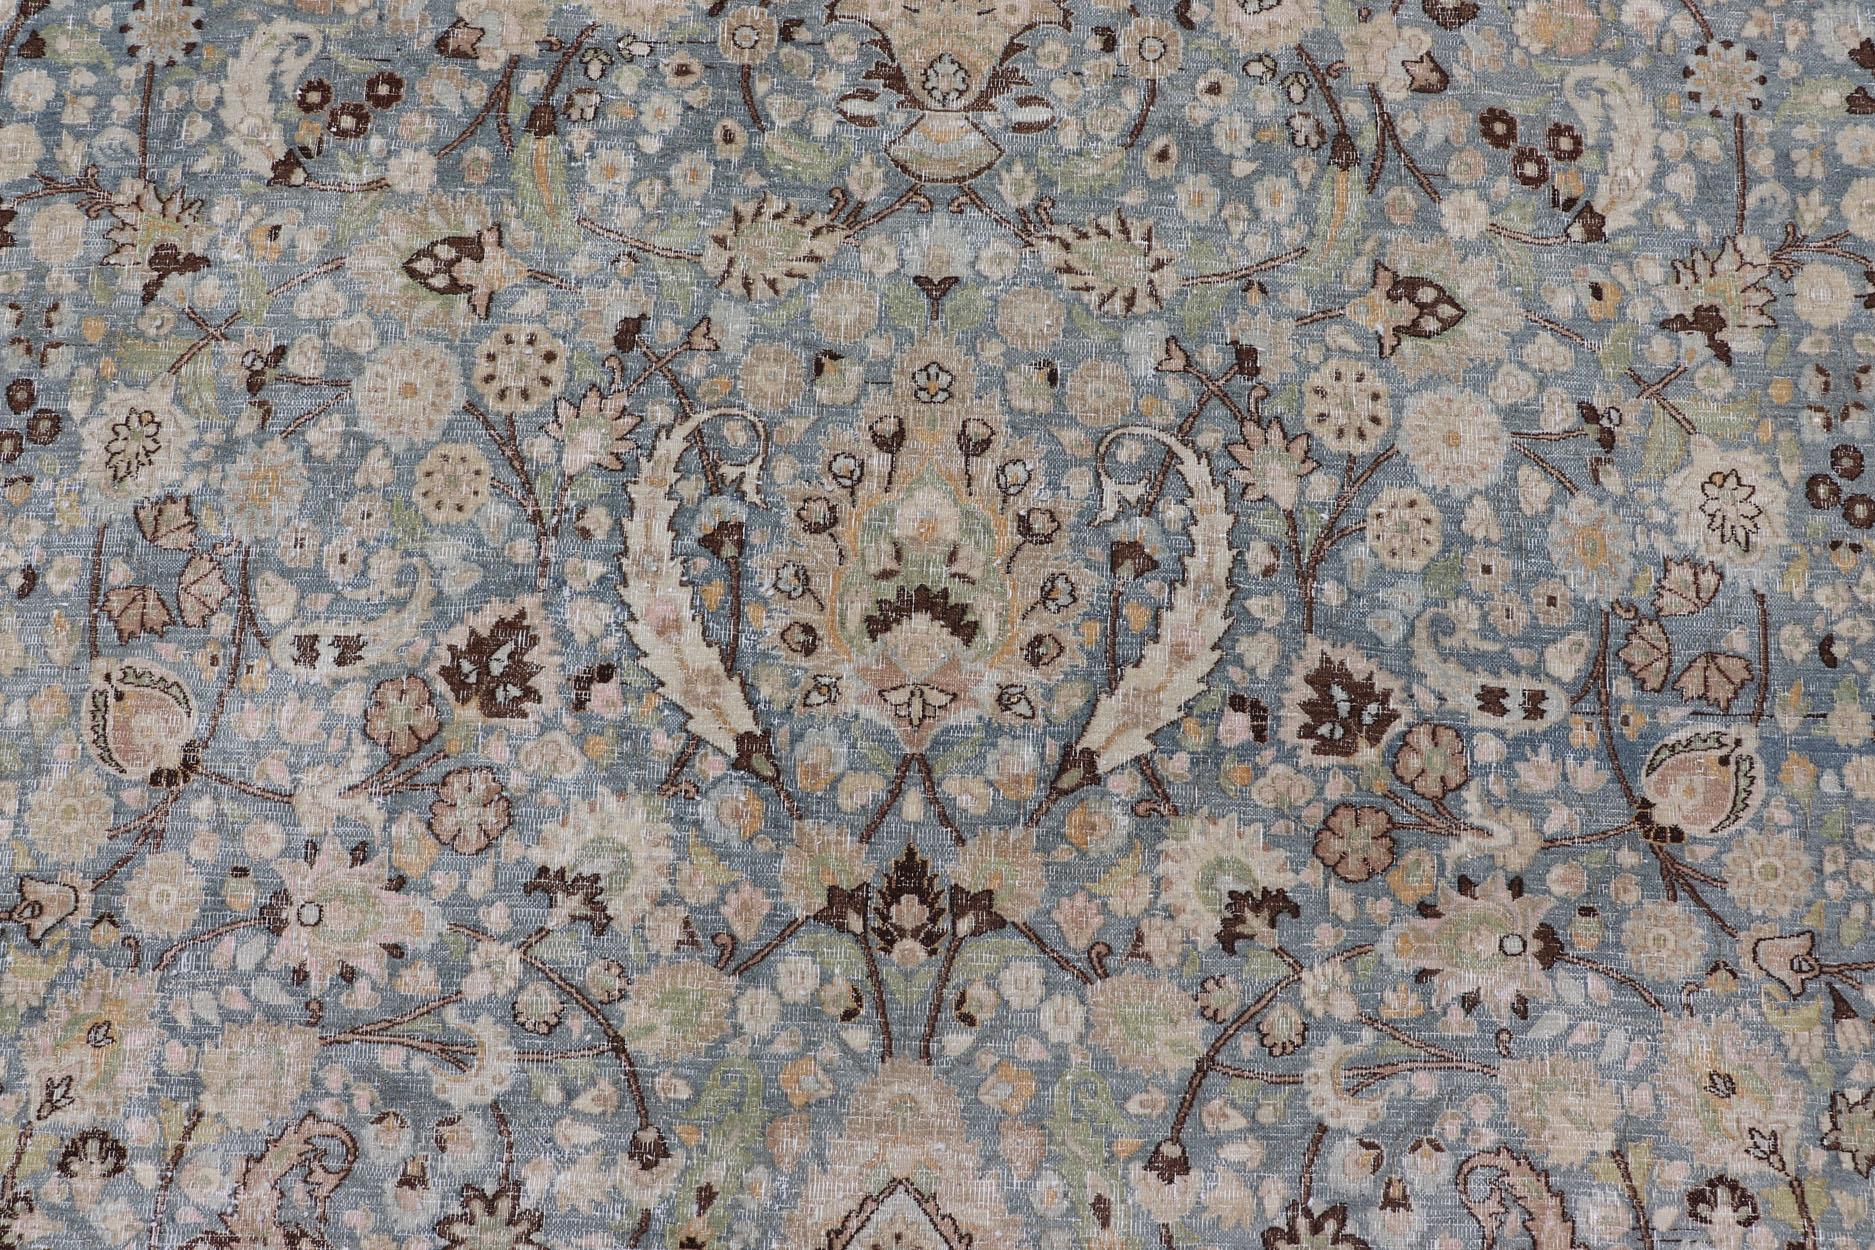 Ce spectaculaire tapis persan ancien de Khorasan, datant de l'Iran du début du XXe siècle, est d'une splendeur magnifique qui témoigne des goûts royaux, qui recherchaient la perfection en matière d'équilibre et de palette. Le champ central est